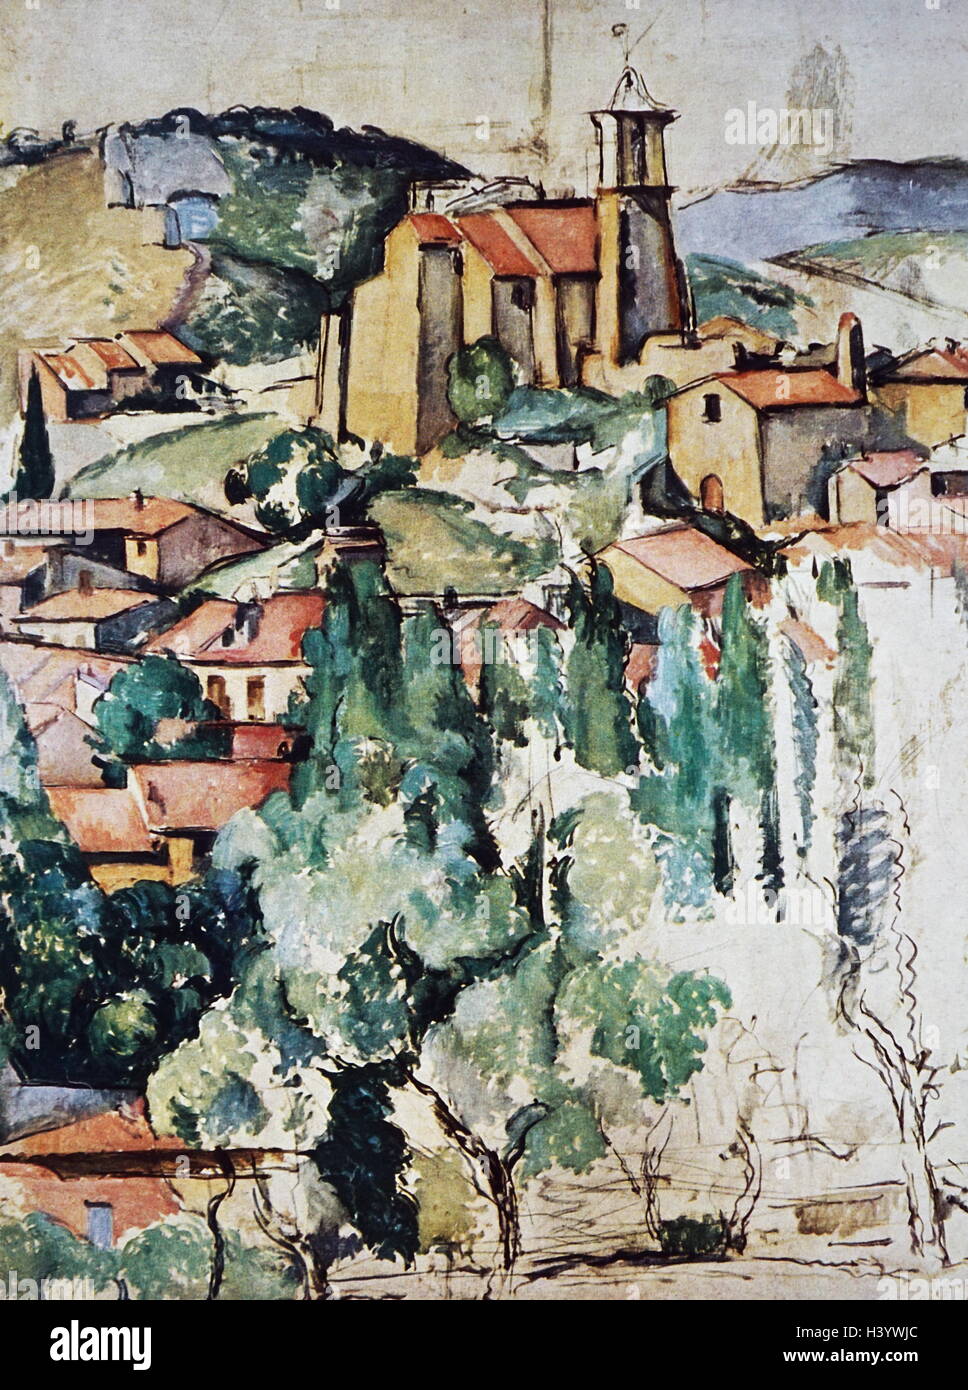 Gemälde mit dem Titel "Ansicht von Gardanne' von Paul Cézanne (1839-1906), ein französischer Künstler und post-impressionistischen Maler. Vom 19. Jahrhundert Stockfoto